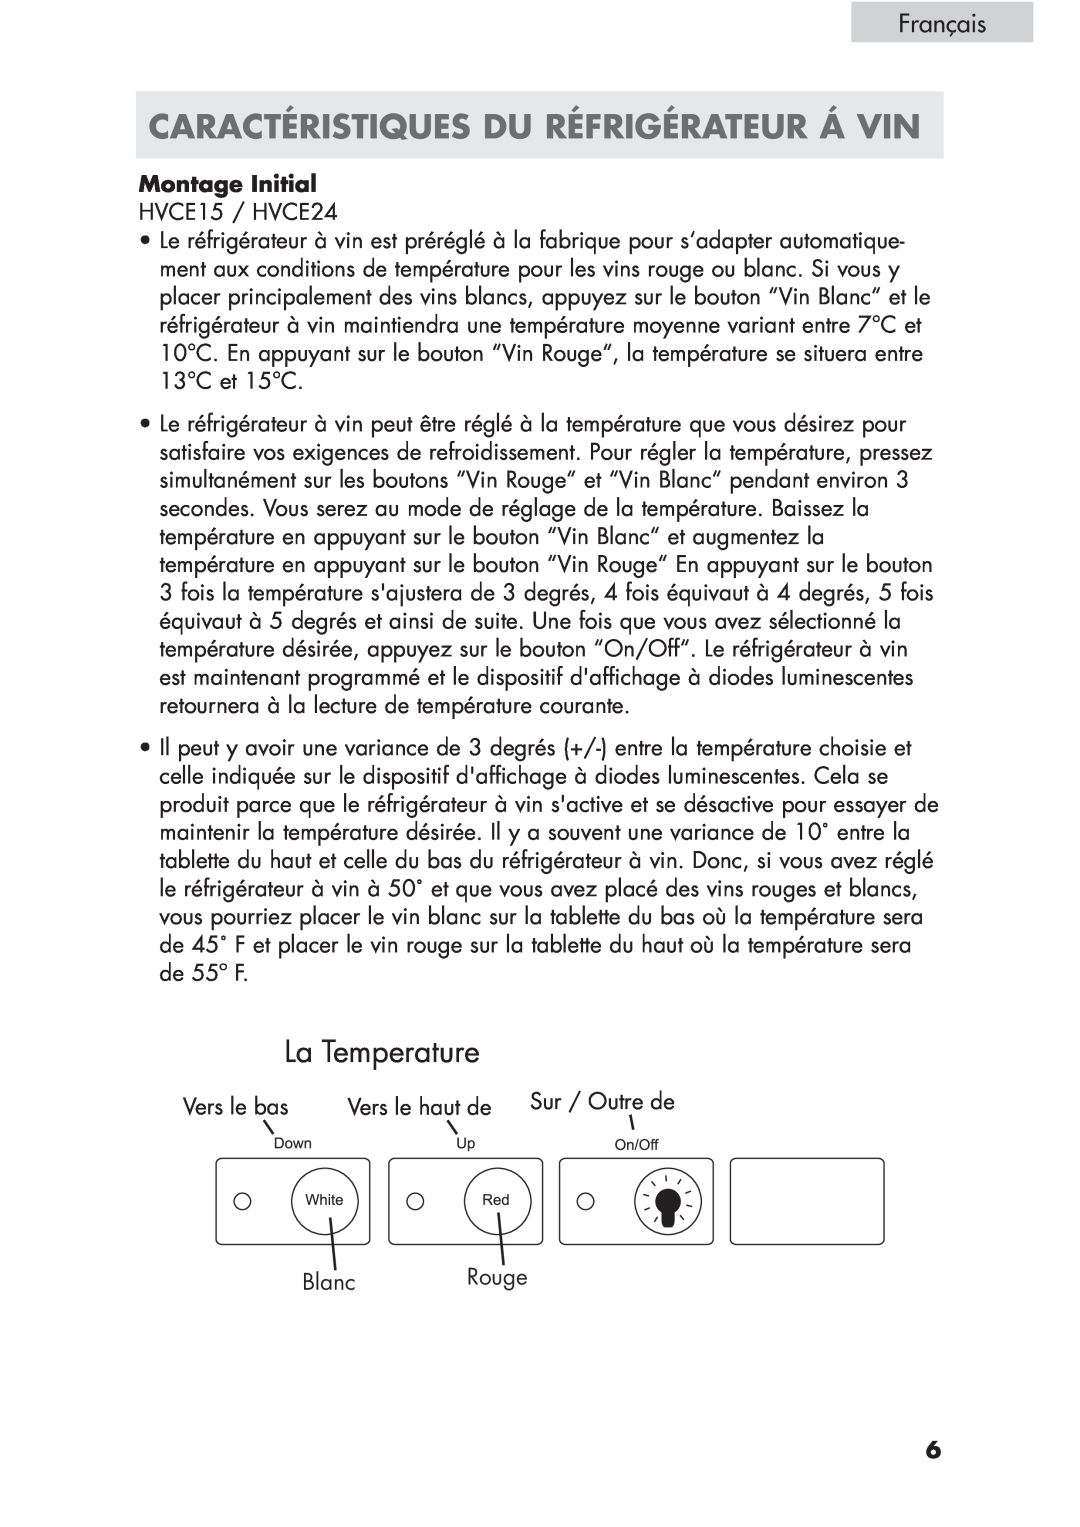 Haier HVCE15, HVCE24 user manual Caractéristiques Du Réfrigérateur Á Vin, La Temperature, Français, Montage Initial 